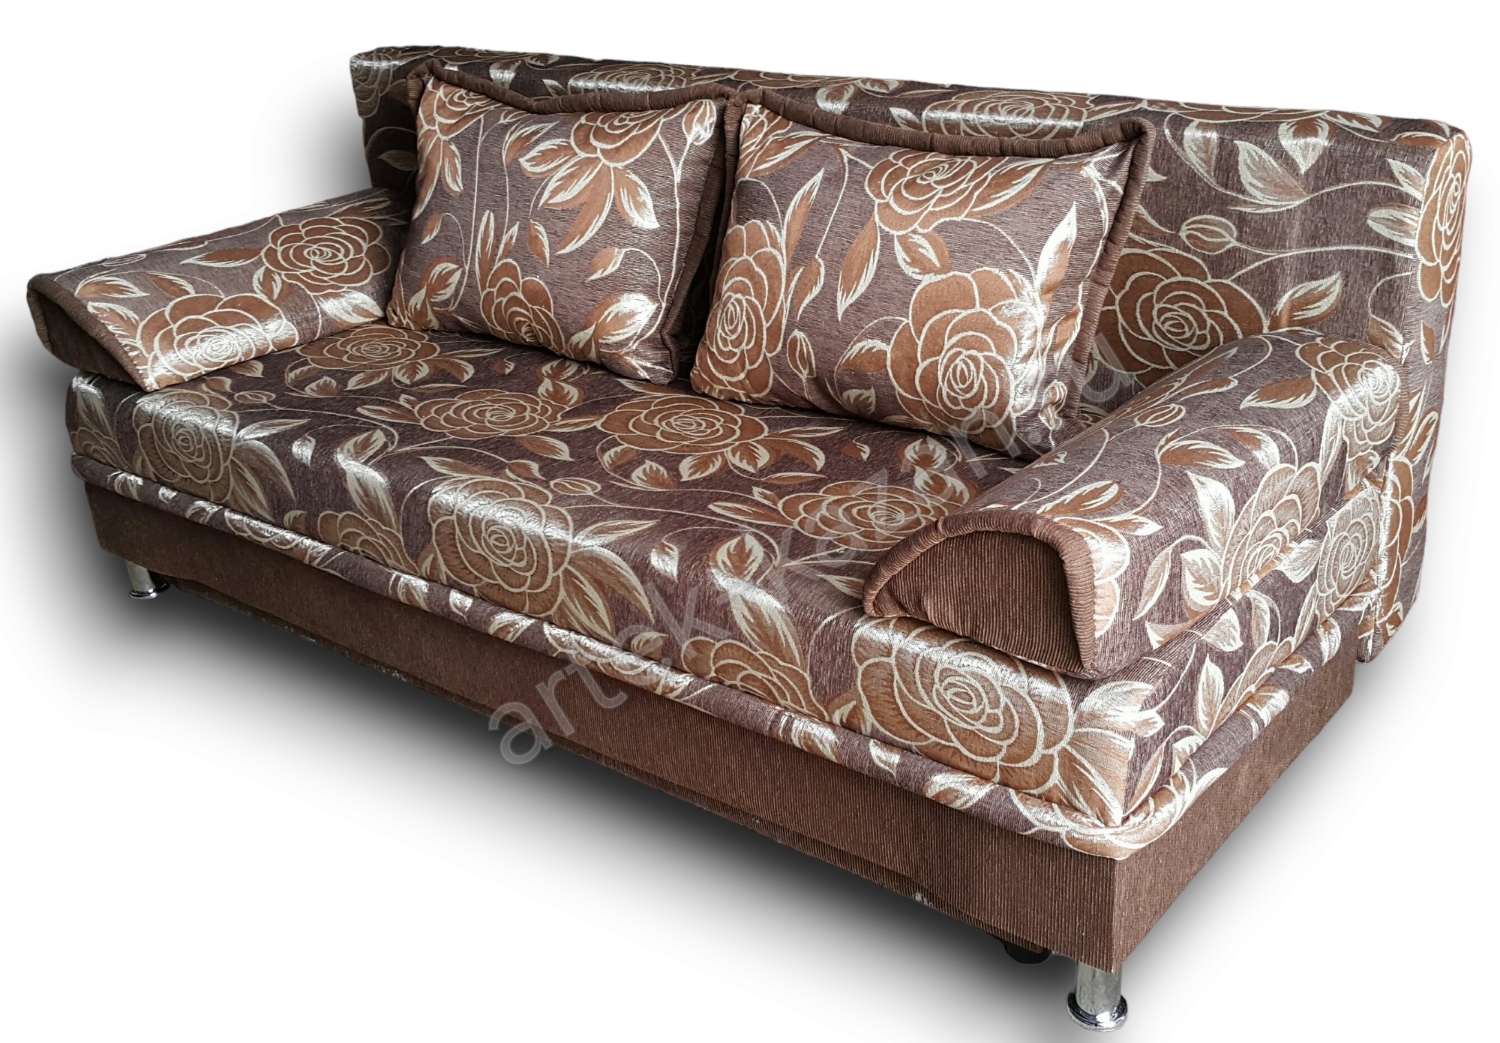 диван еврокнижка Эконом фото № 5. Купить недорогой диван по низкой цене от производителя можно у нас.